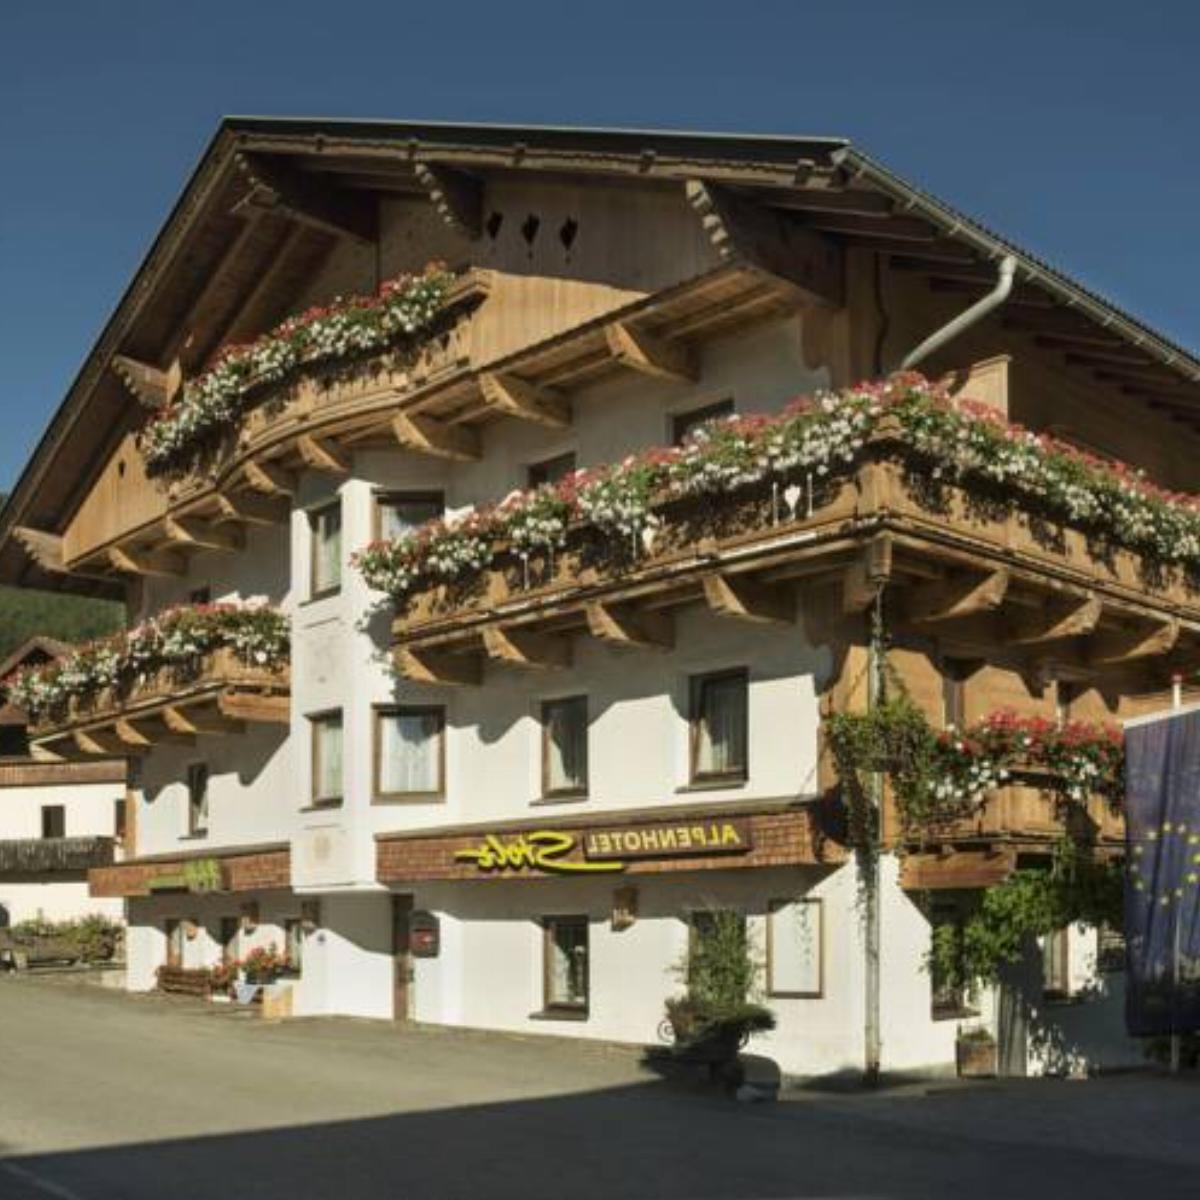 Hotel Alpenstolz